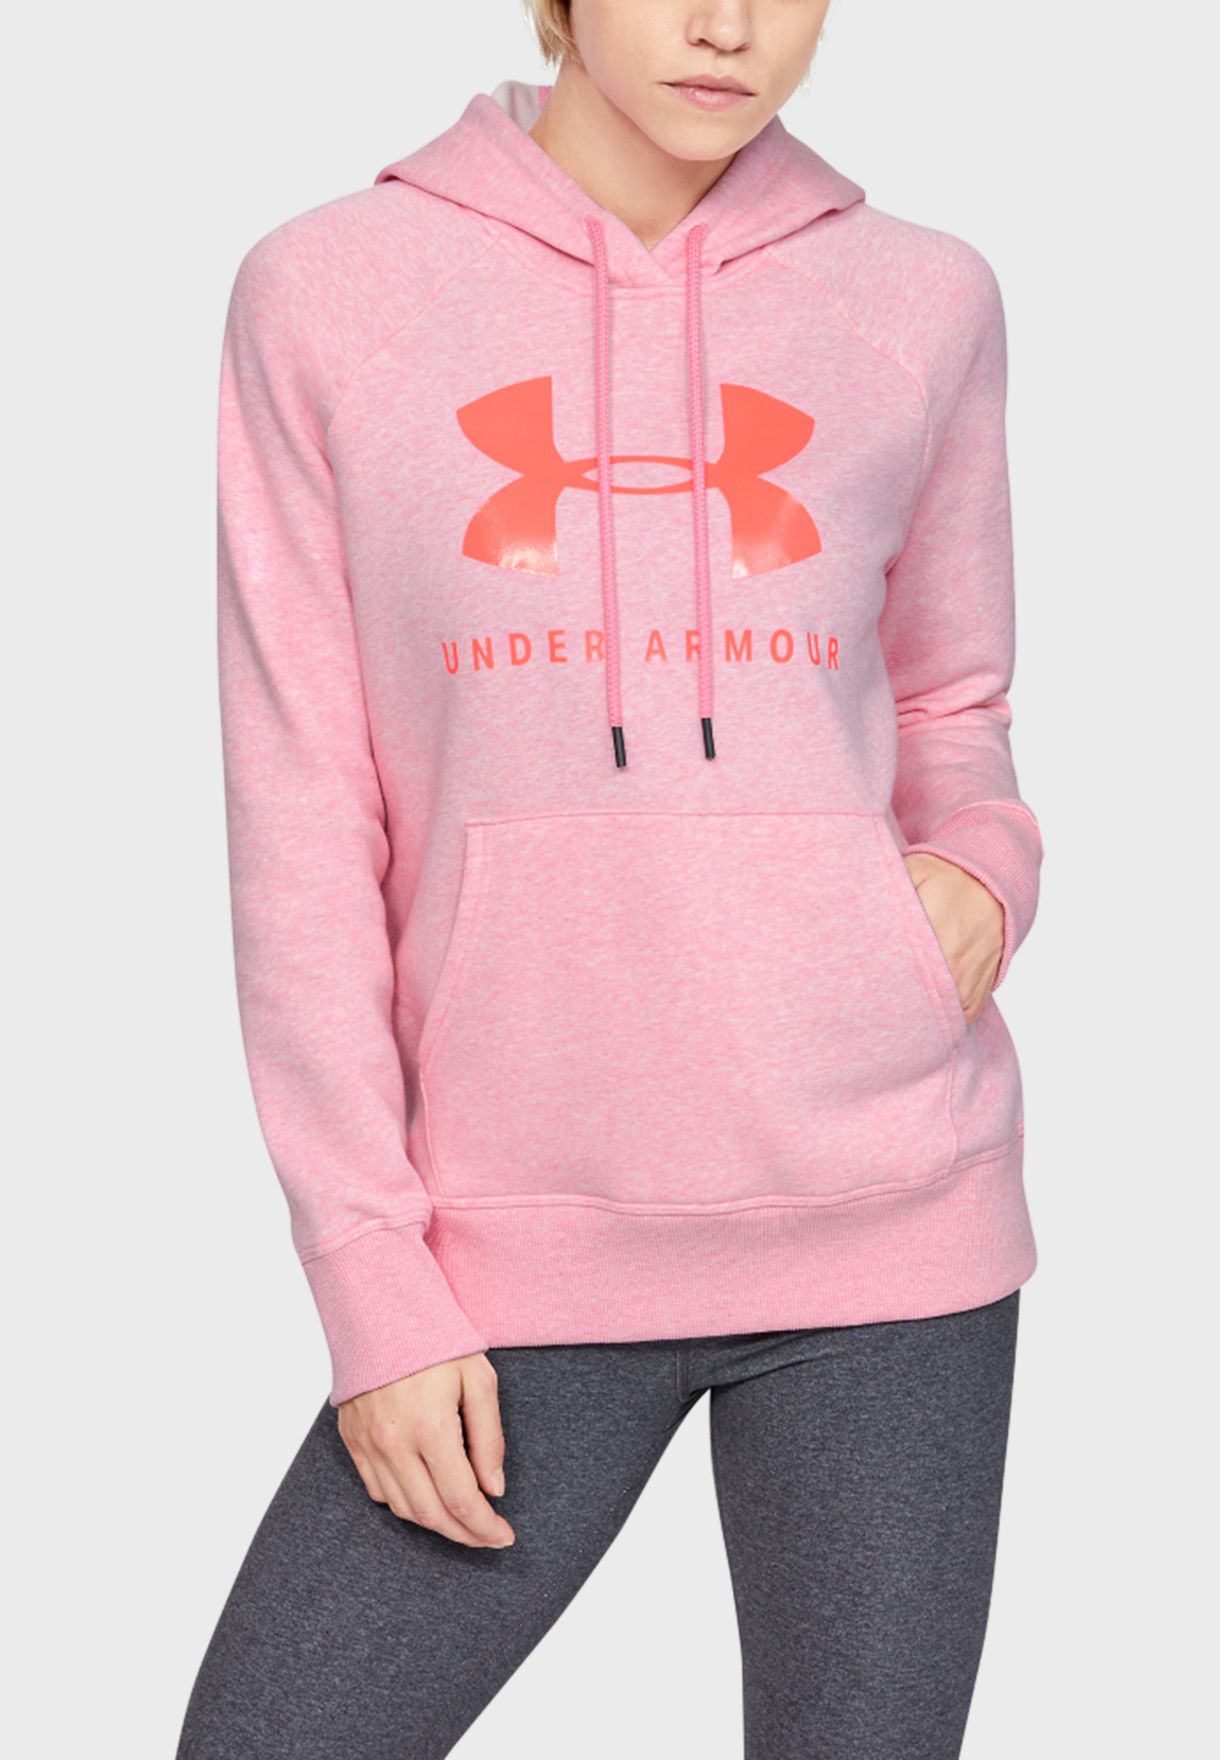 under armour pink sweatshirt